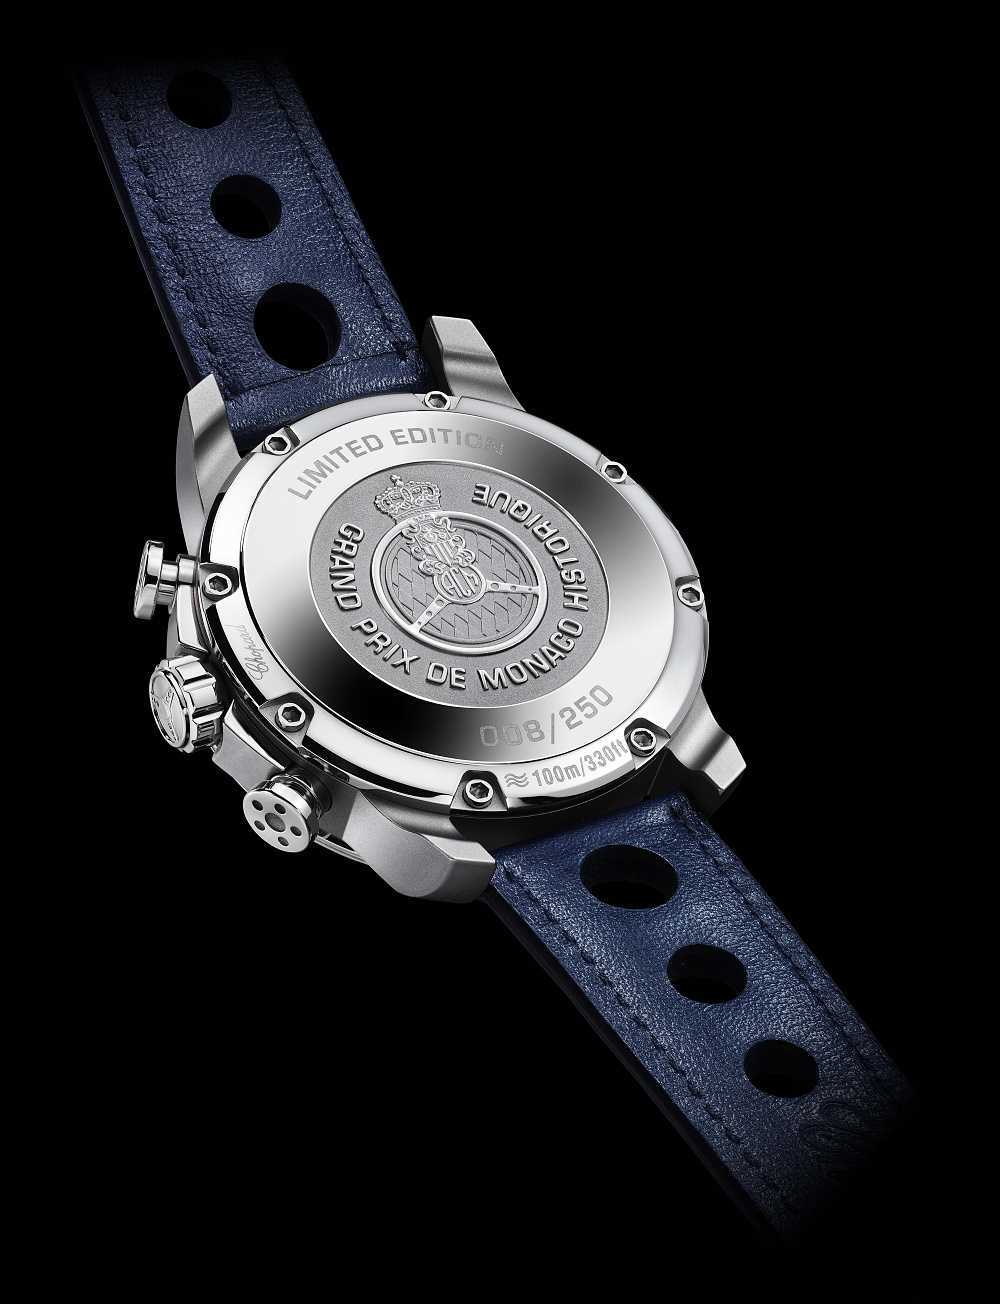 Chopard oficiální časomíra Grand Prix de Monaco GPMH 2018 Race Edition 2 | Sportovní model hodinek Chopard představen na akci Porsche